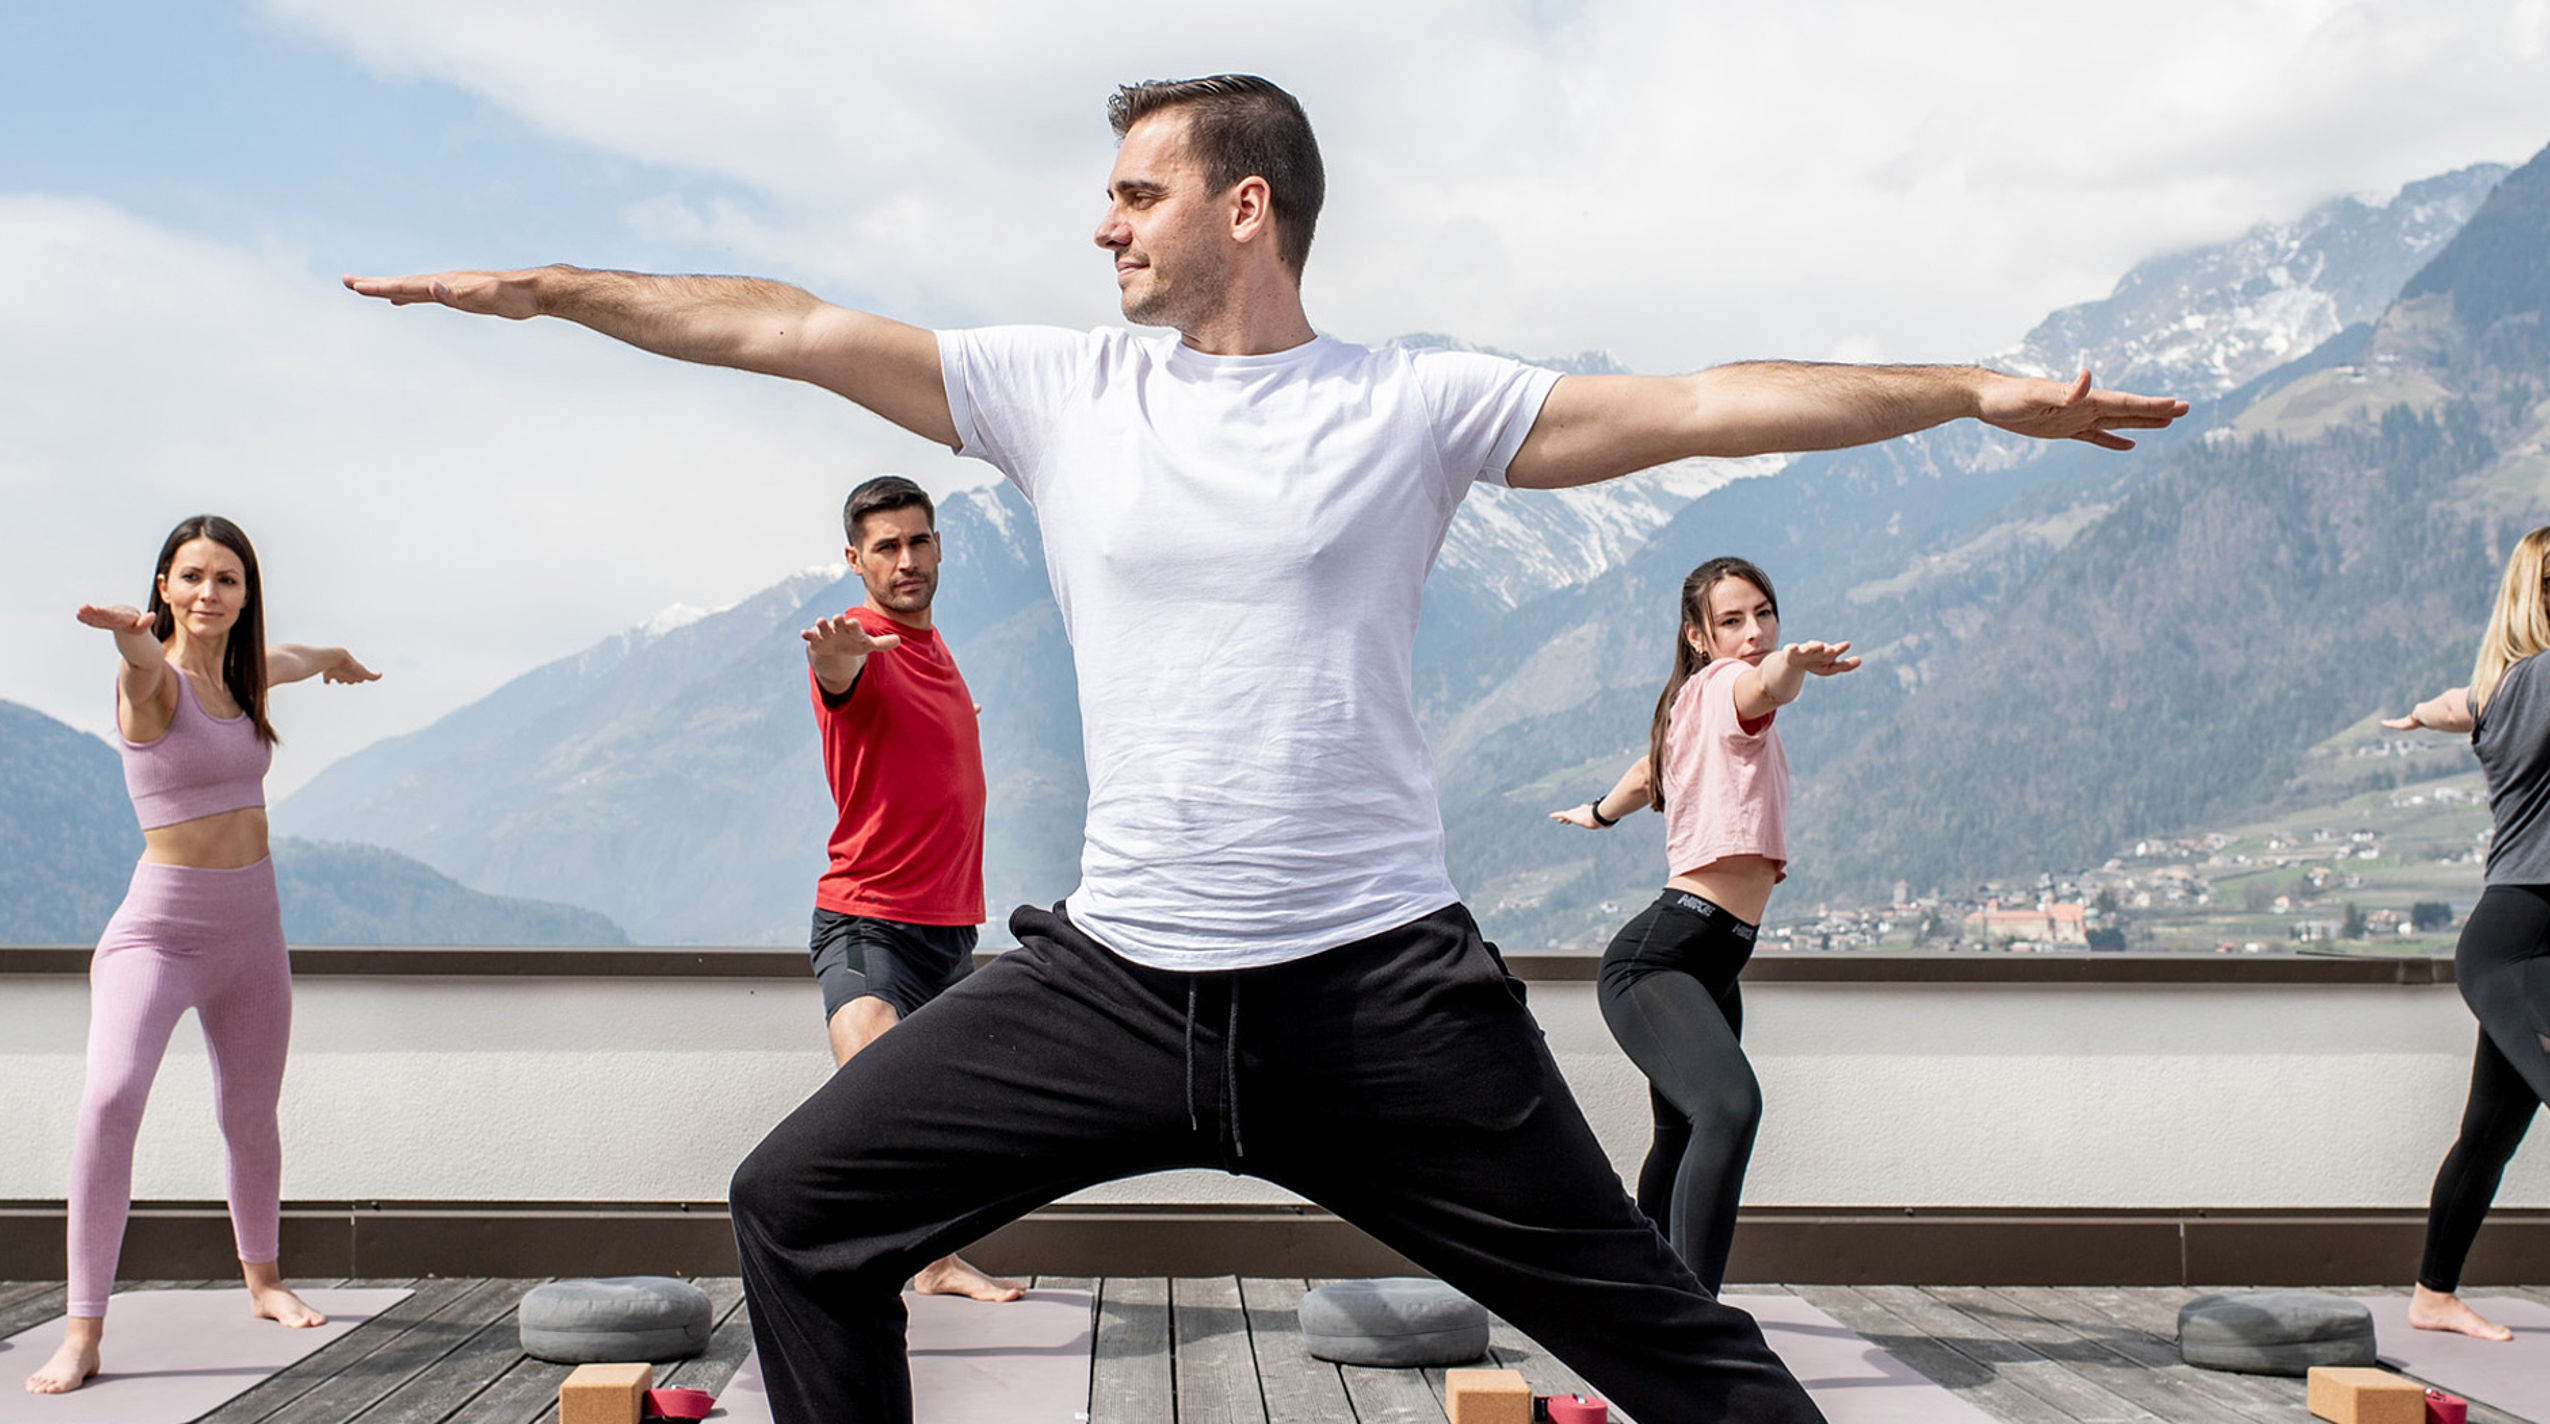 Un uomo in maglietta bianca mostra una posizione di yoga, altri quattro seguono l'esempio